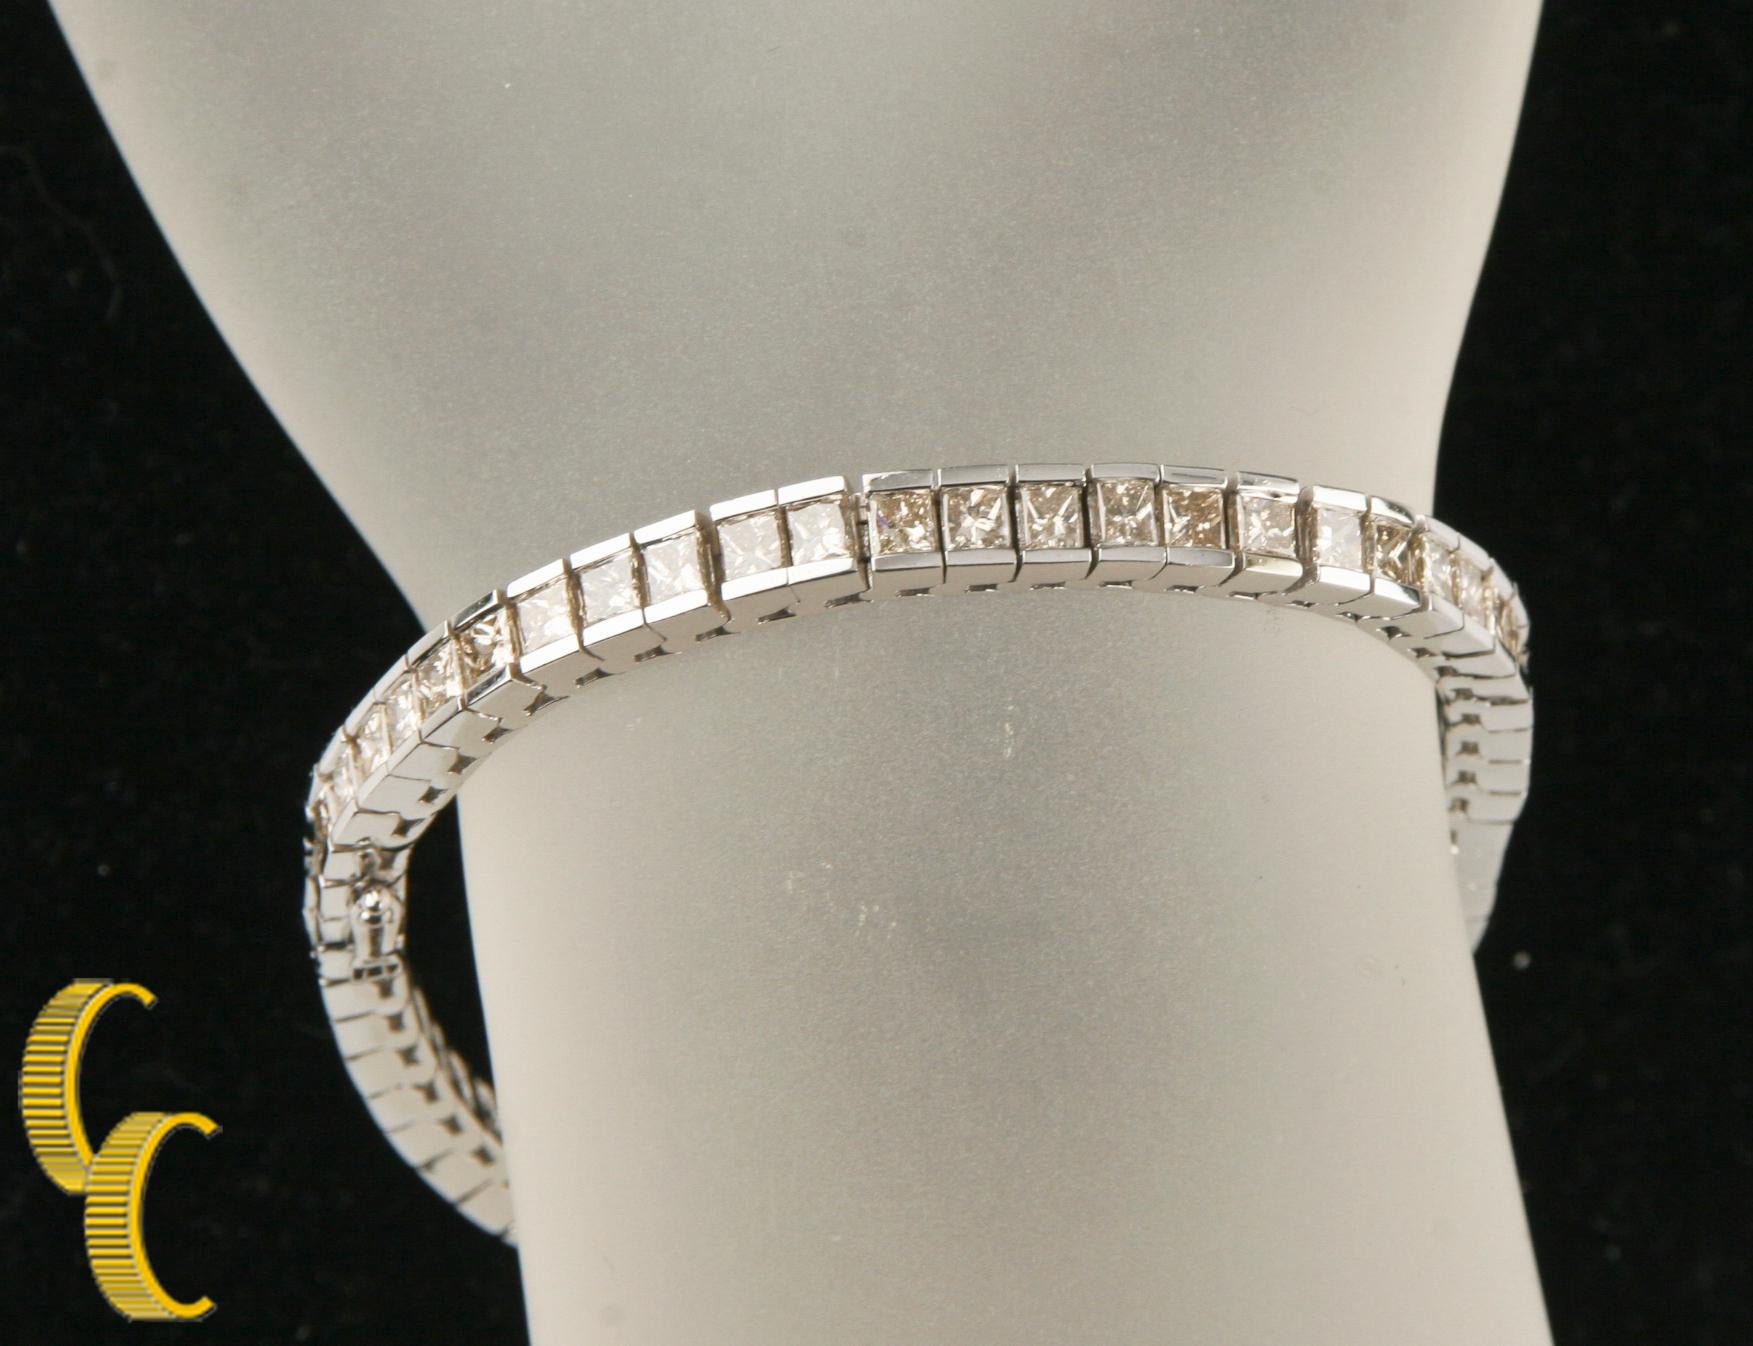 Wunderschönes Tennisarmband aus 14k Weißgold
58 kanalgefasste Diamanten im Prinzessschliff zu je .20ct-.21ct
Gesamtgewicht der Diamanten = ca. 12 Karat
Farbe: Hellbraun
Durchschnittliche Klarheit: SI 
Gesamtmasse = 29.7 Gramm
Gesamtlänge = 7,5